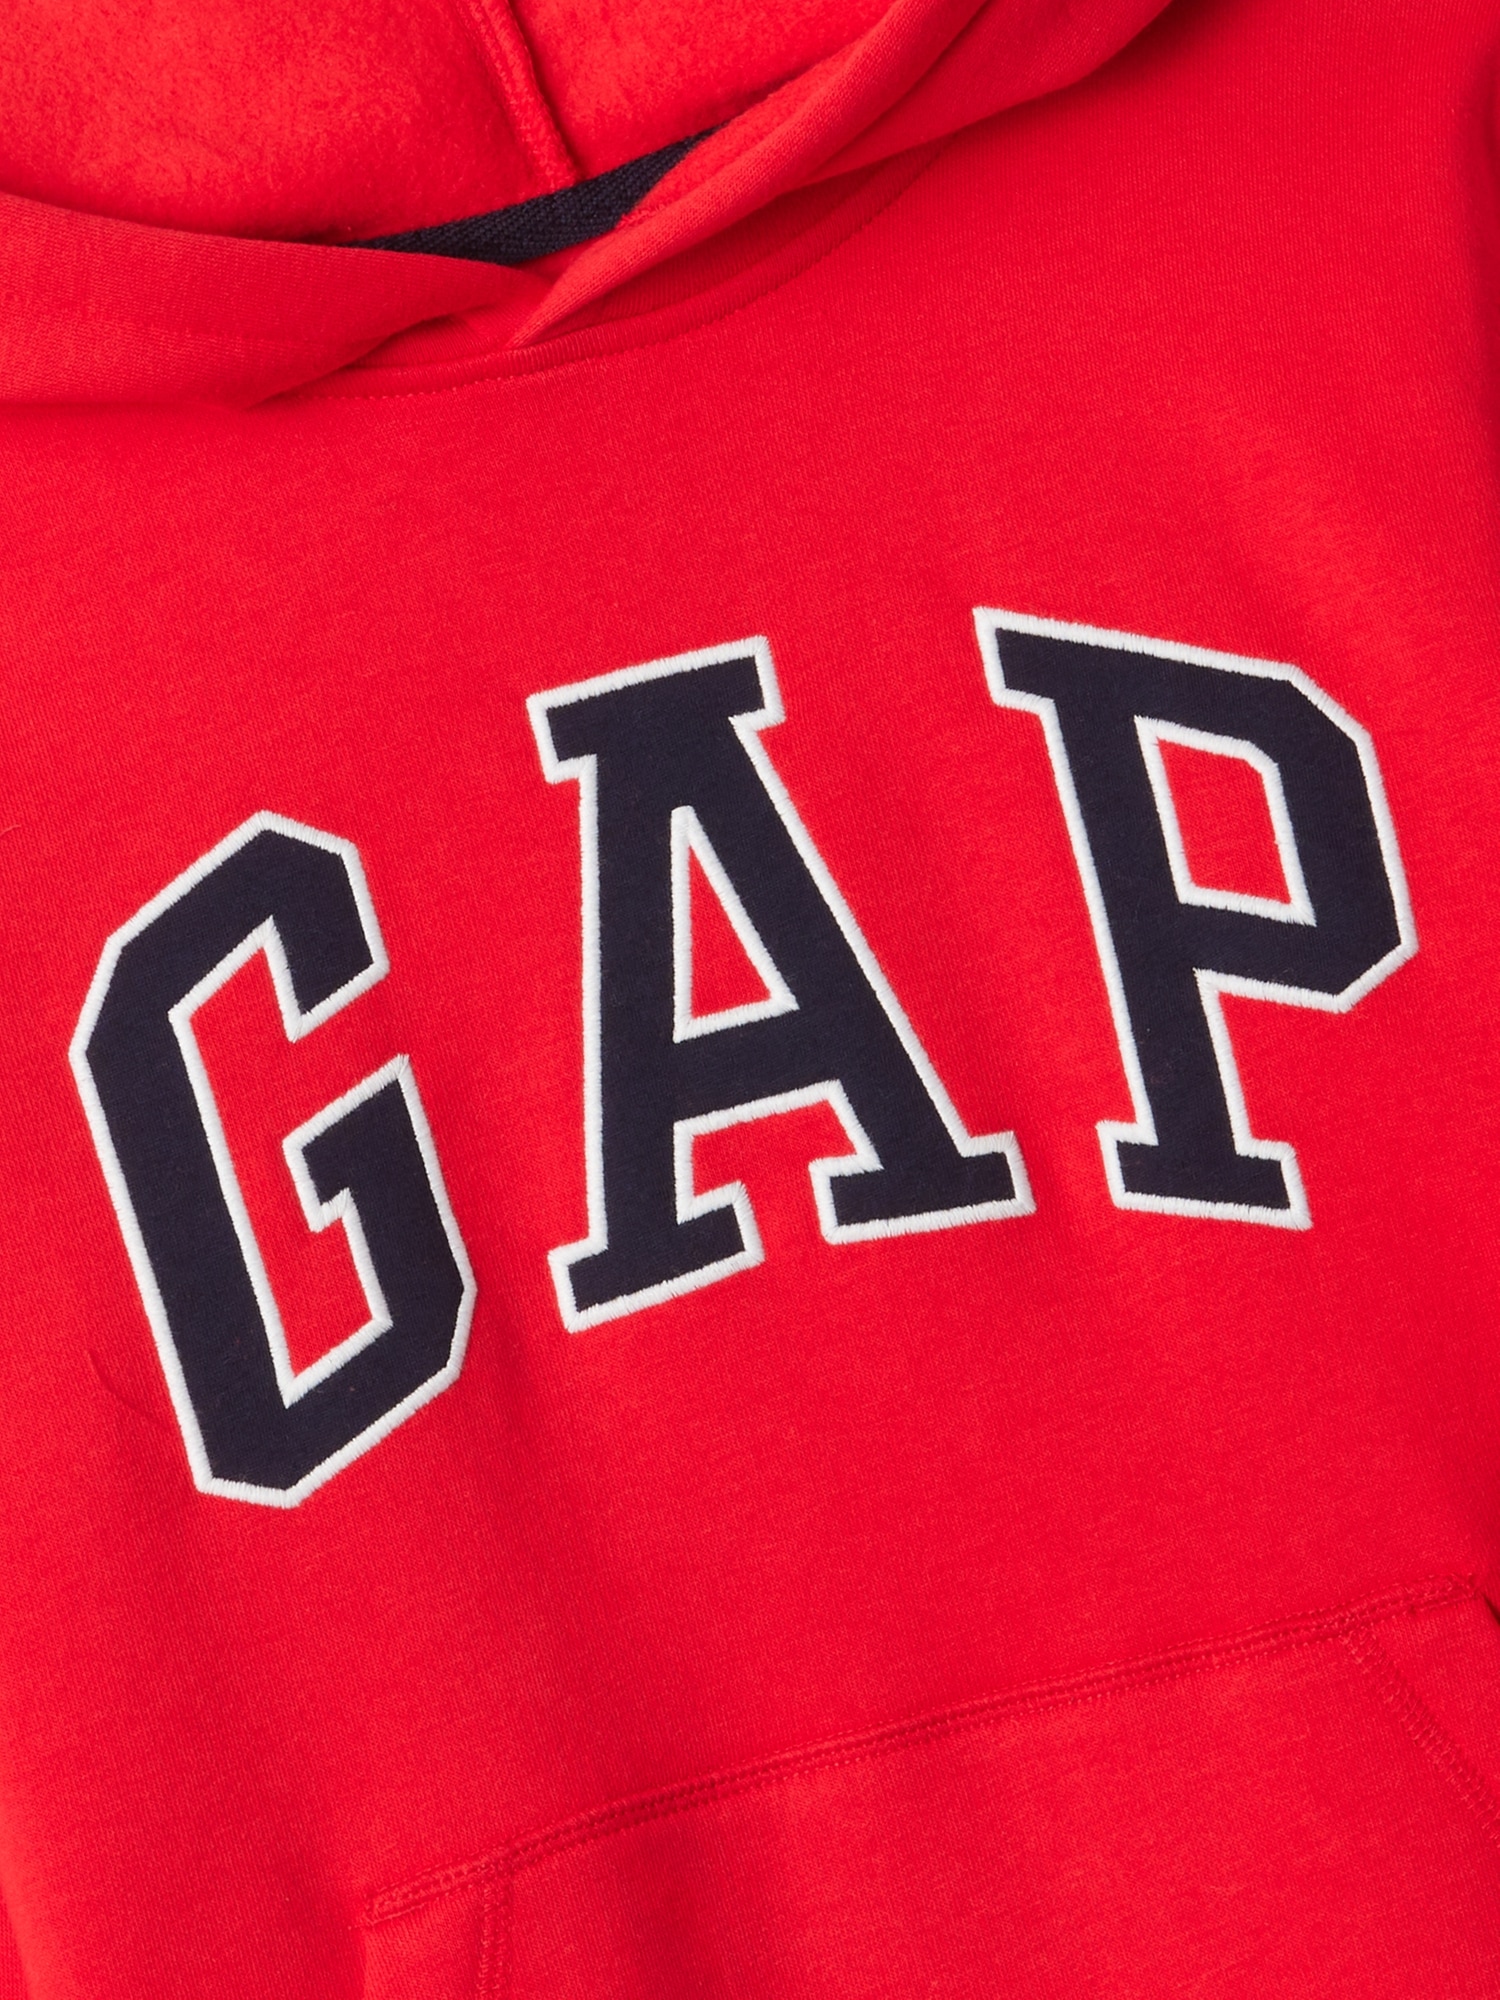 Kids Gap Logo Hoodie | Gap Factory